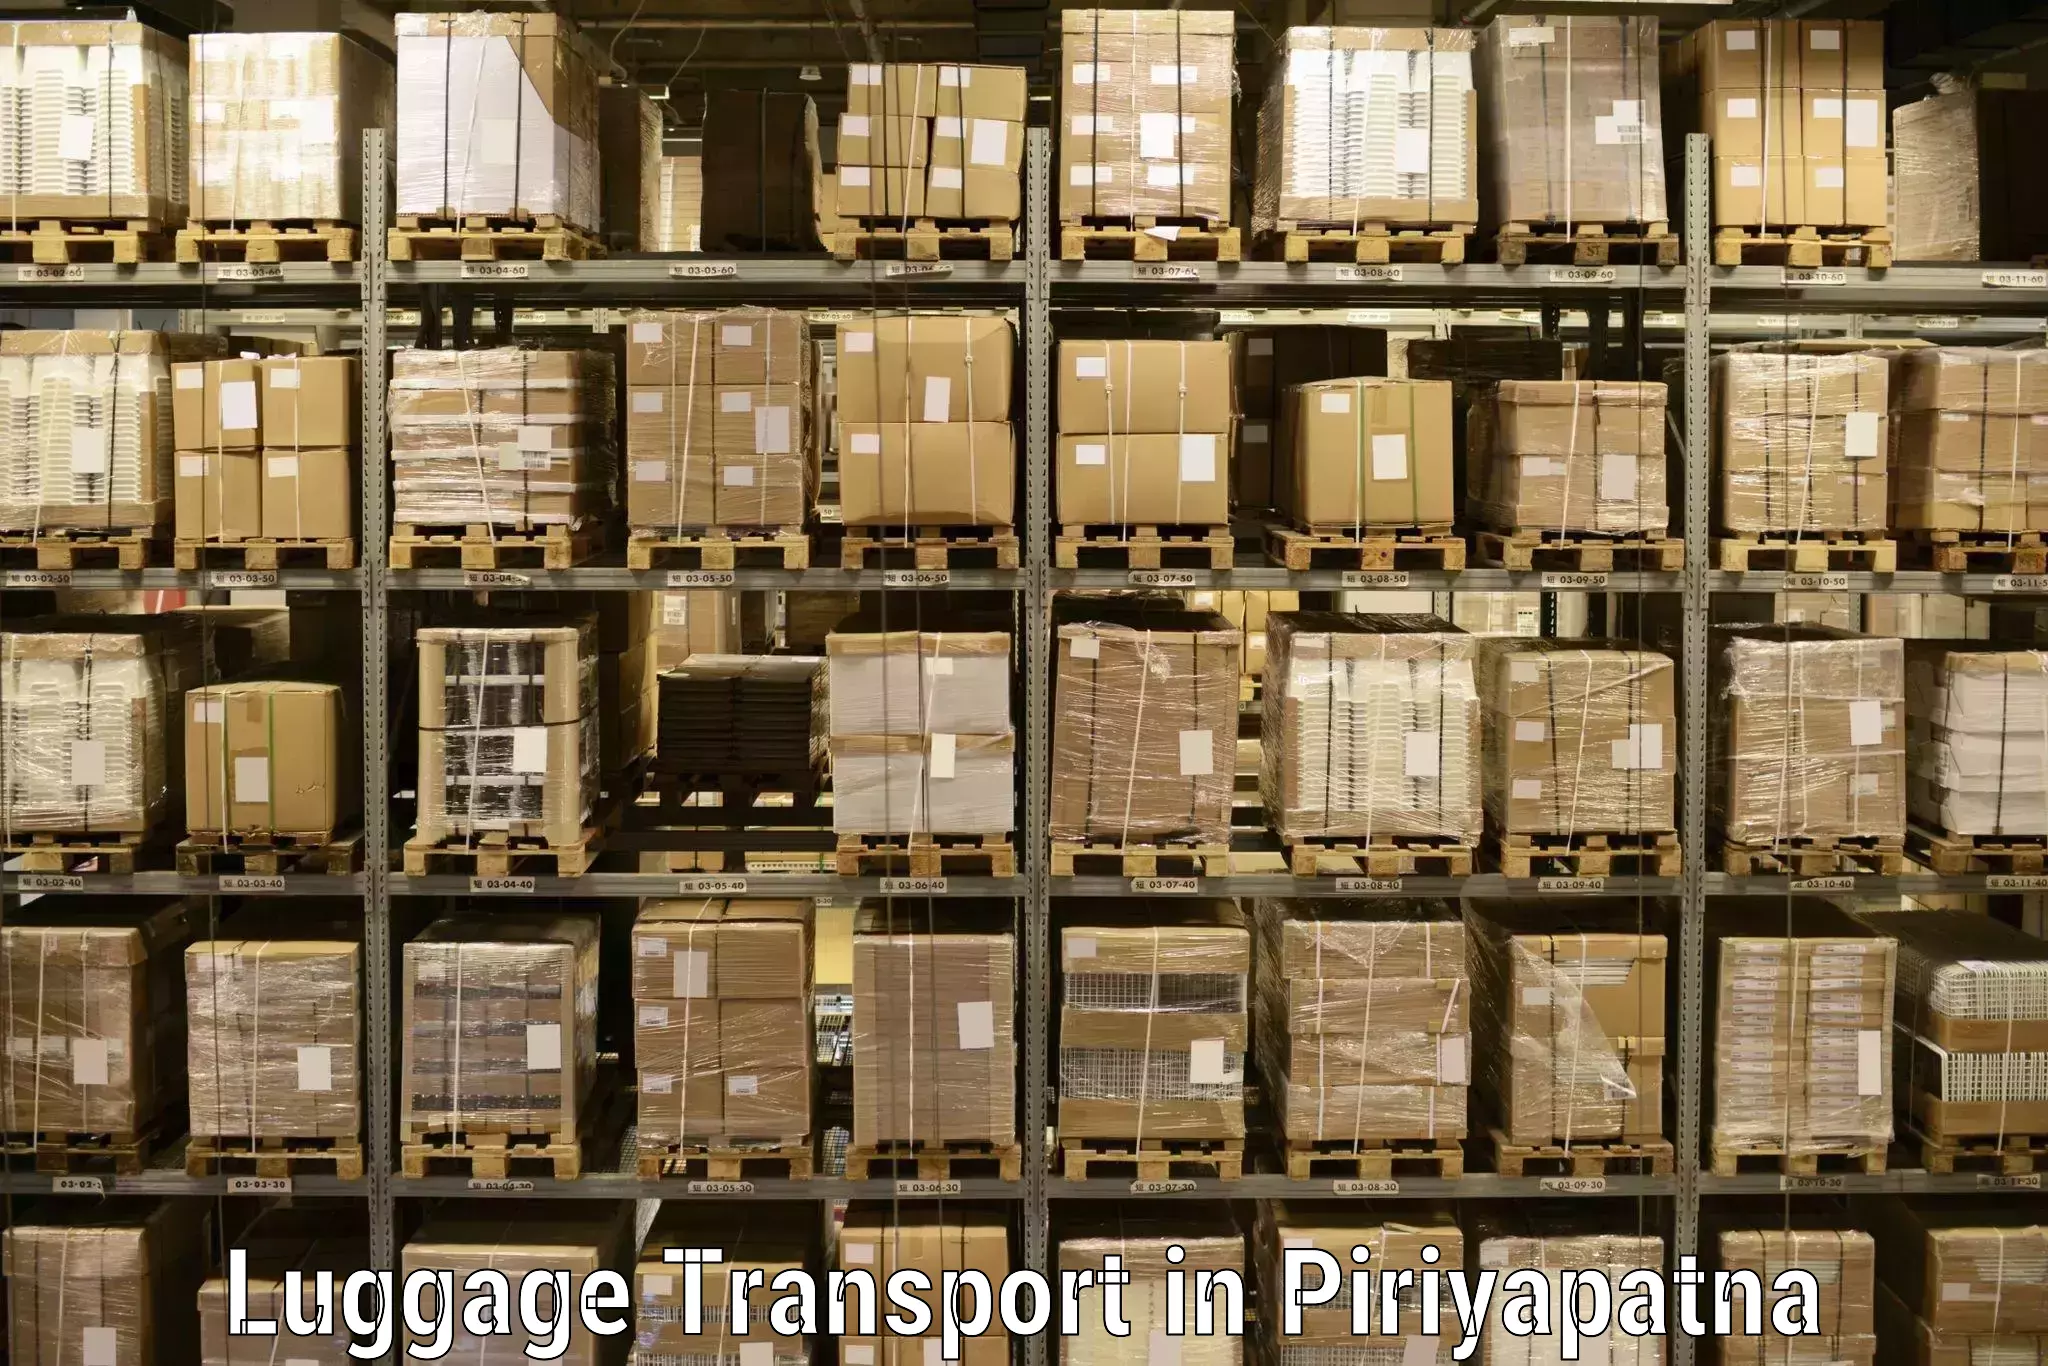 Baggage transport updates in Piriyapatna